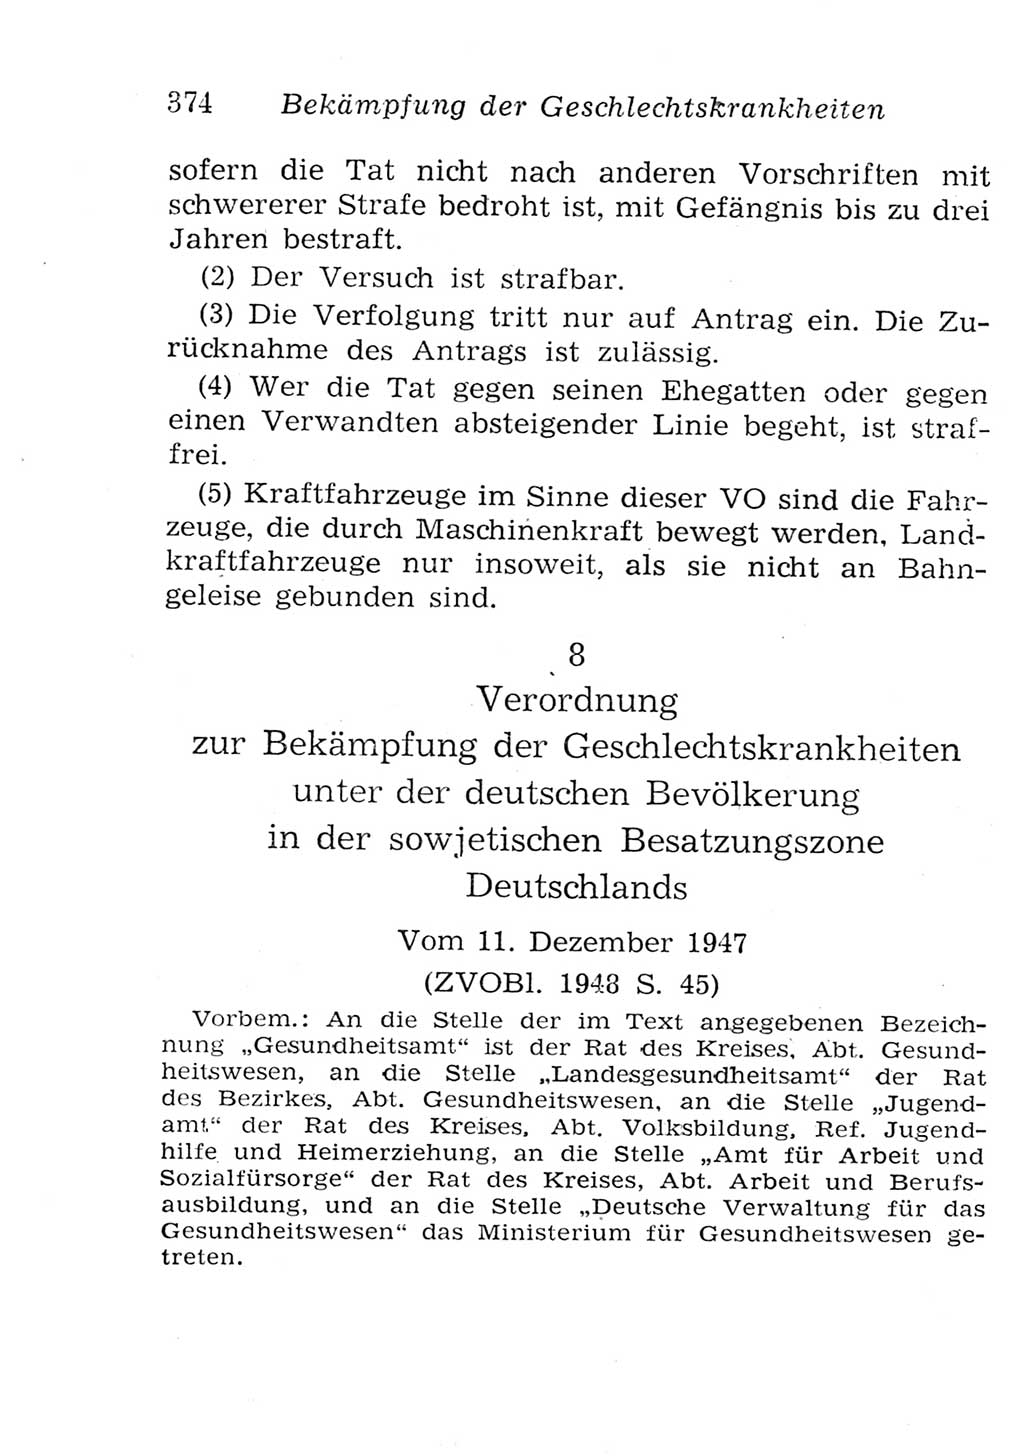 Strafgesetzbuch (StGB) und andere Strafgesetze [Deutsche Demokratische Republik (DDR)] 1957, Seite 374 (StGB Strafges. DDR 1957, S. 374)